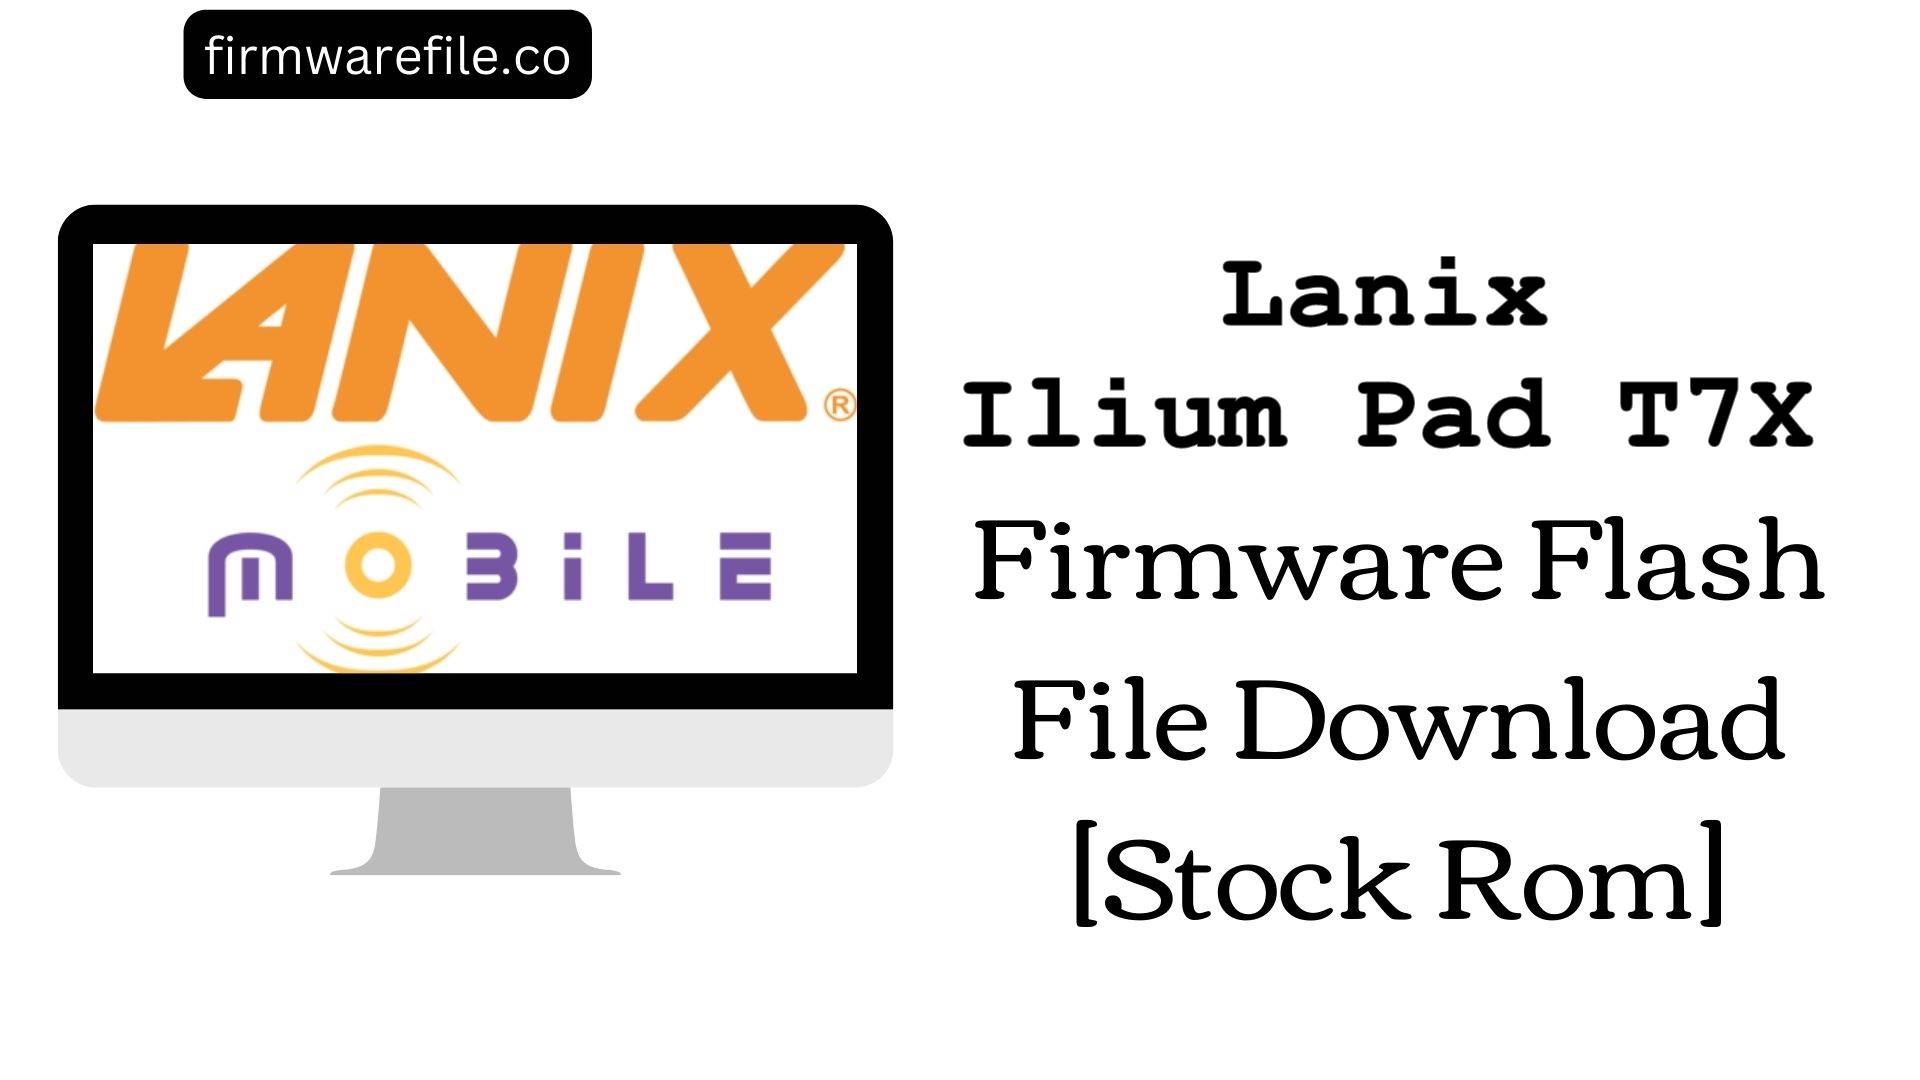 Lanix Ilium Pad T7X